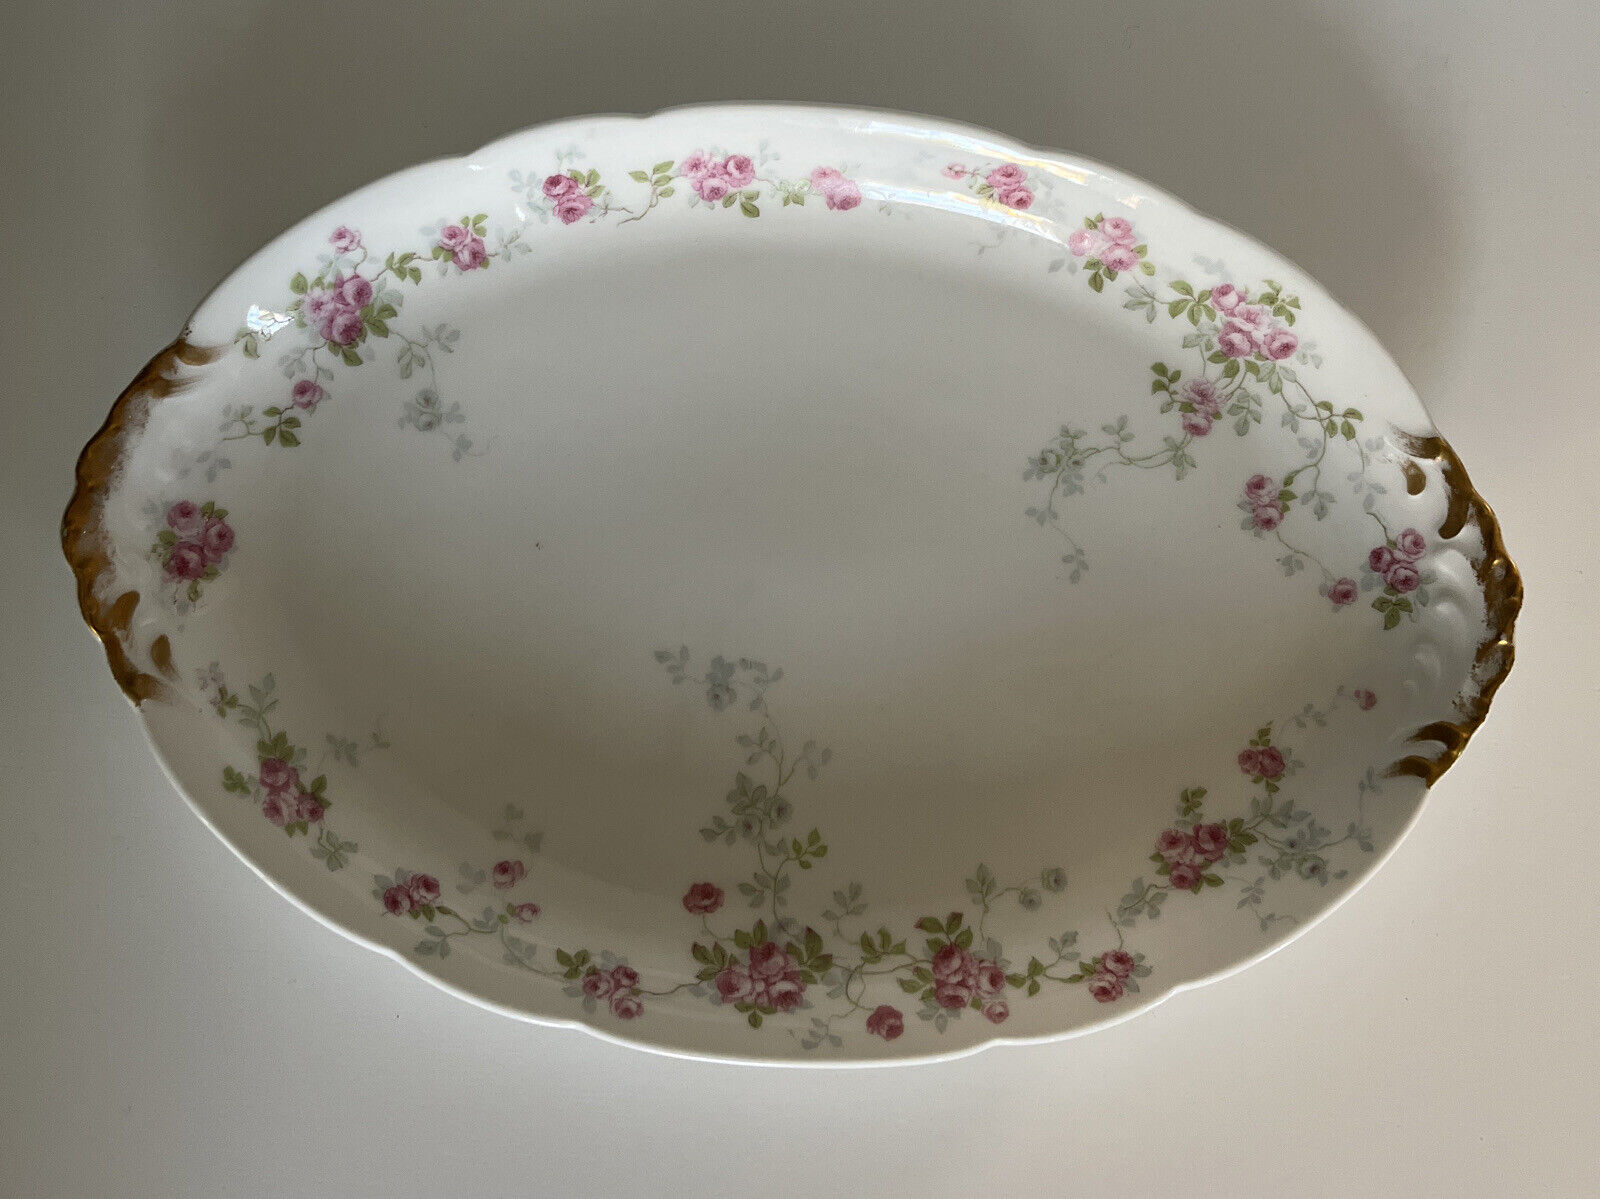 Antique Porcelain Limoges France Pink Roses Serving Platter For Marshall Field’s